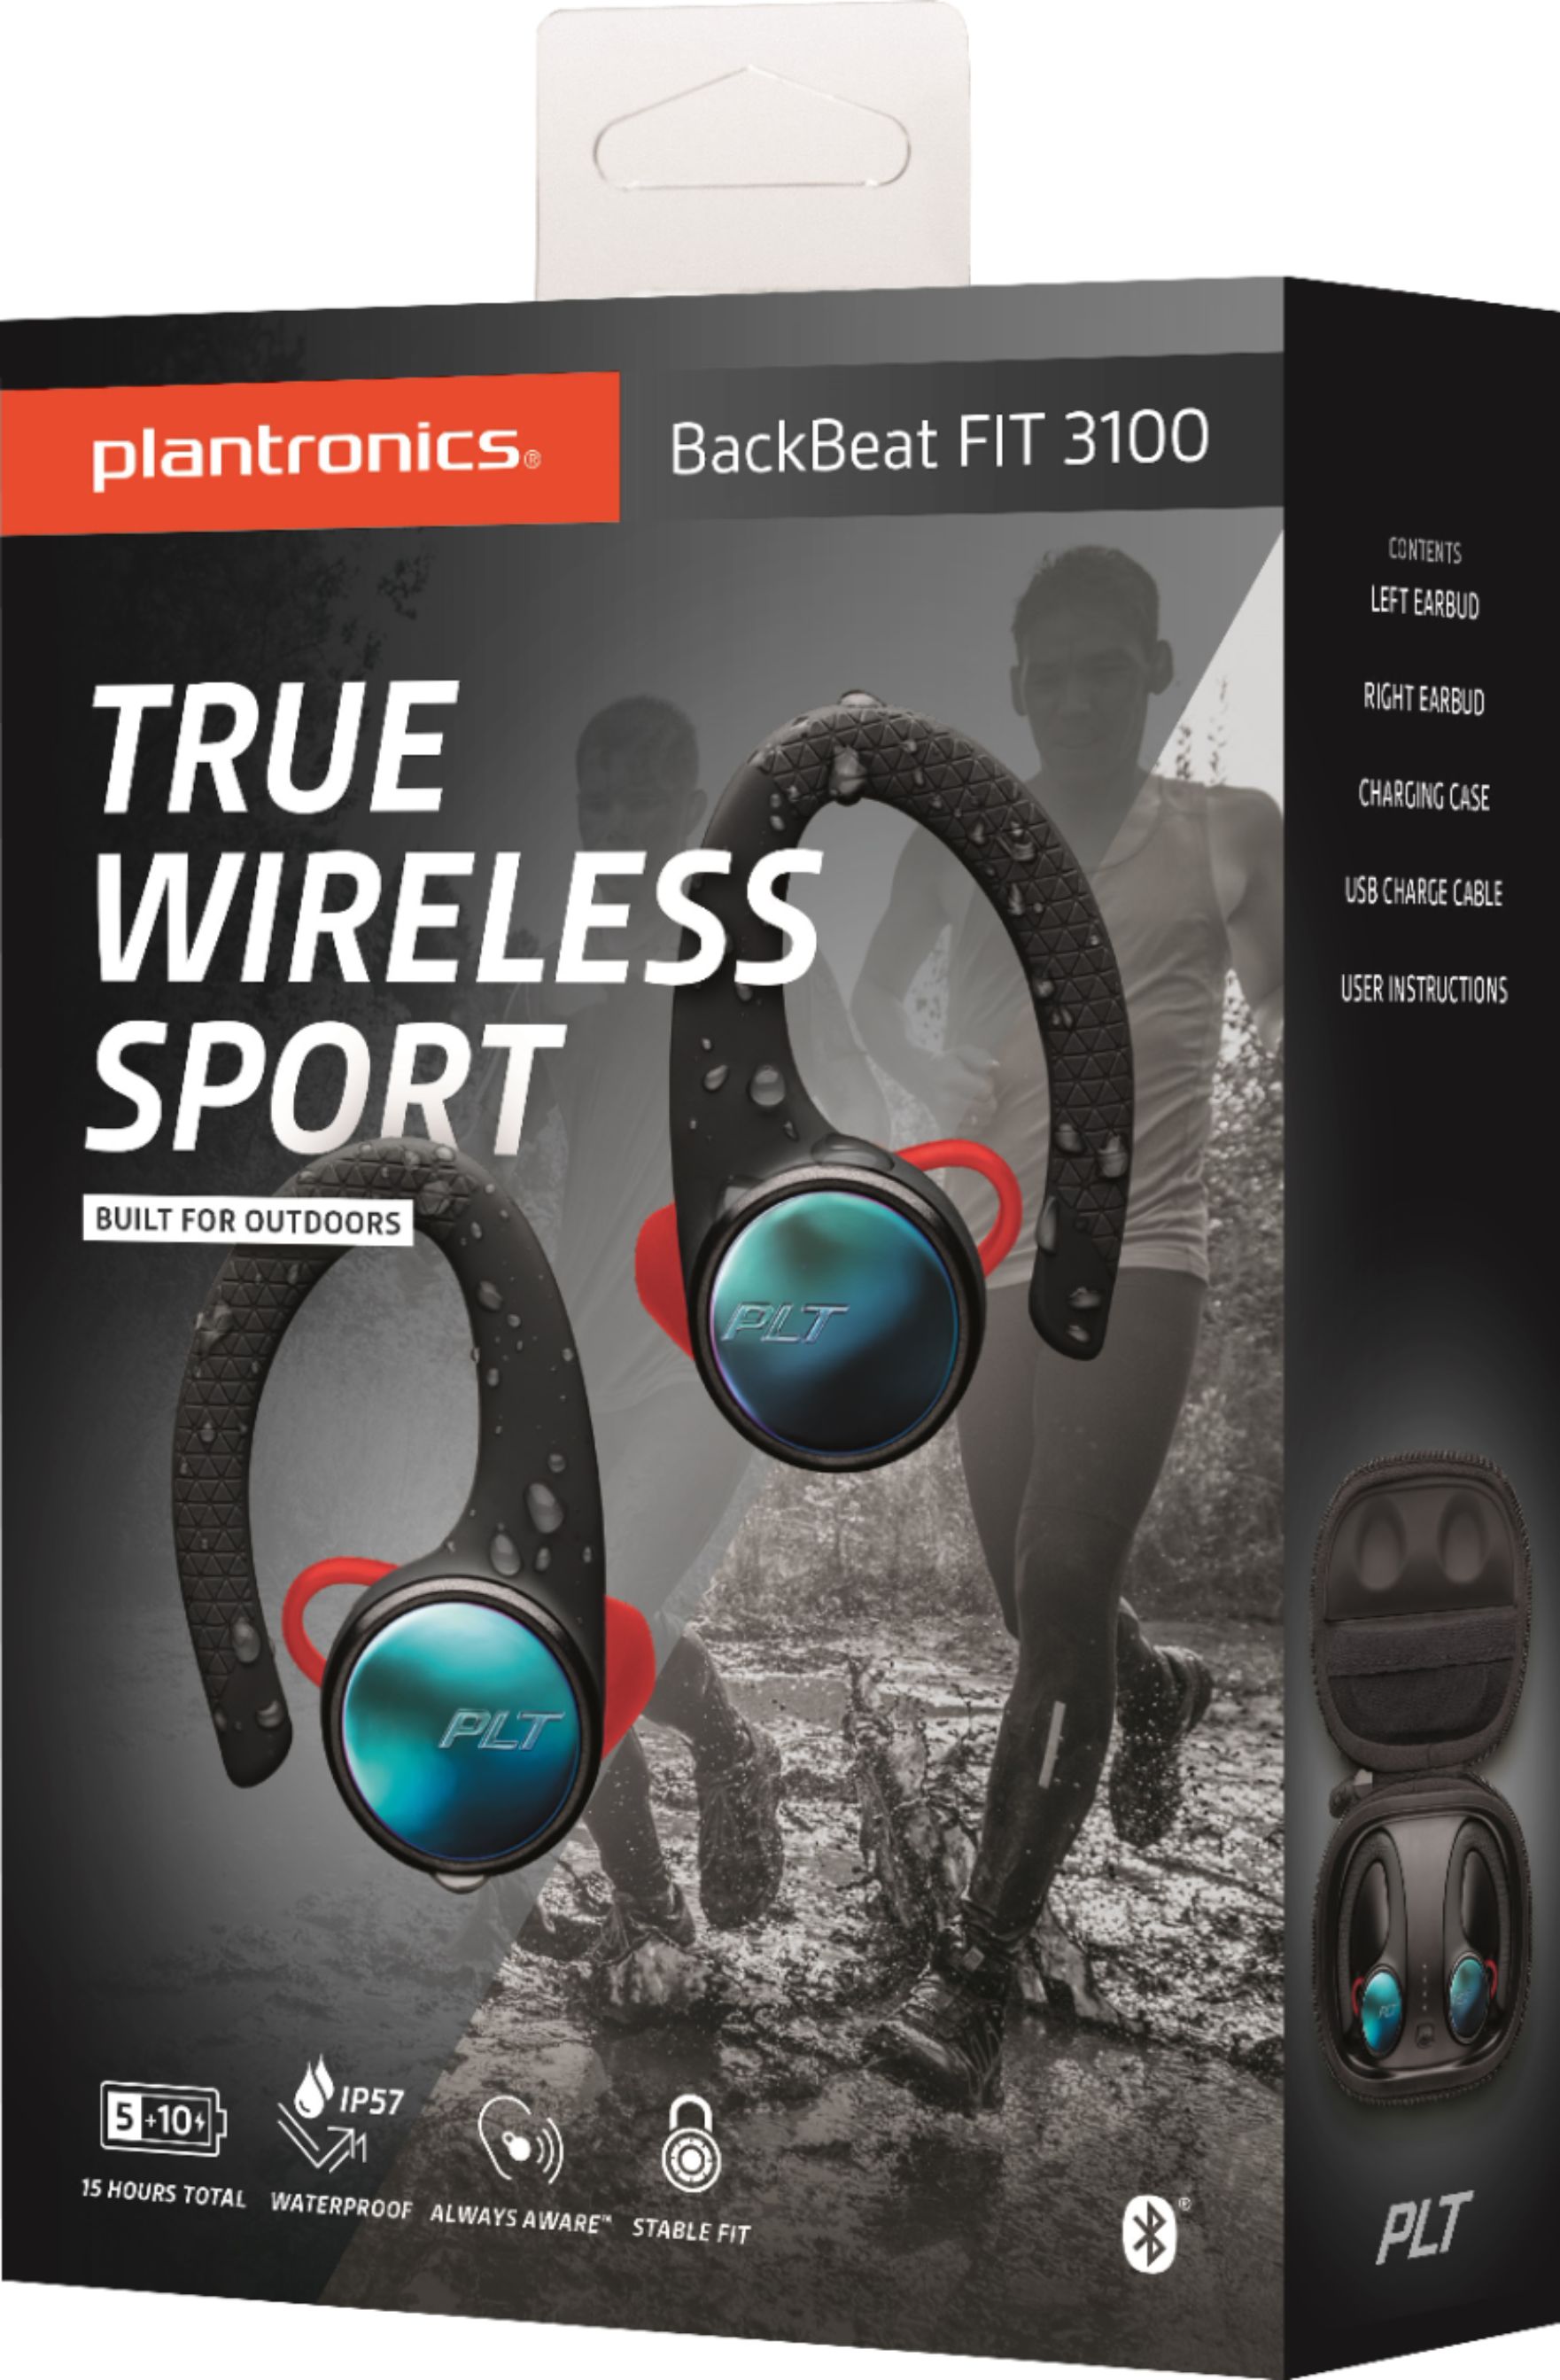 plantronics backbeat fit 3100 true wireless sports earbuds